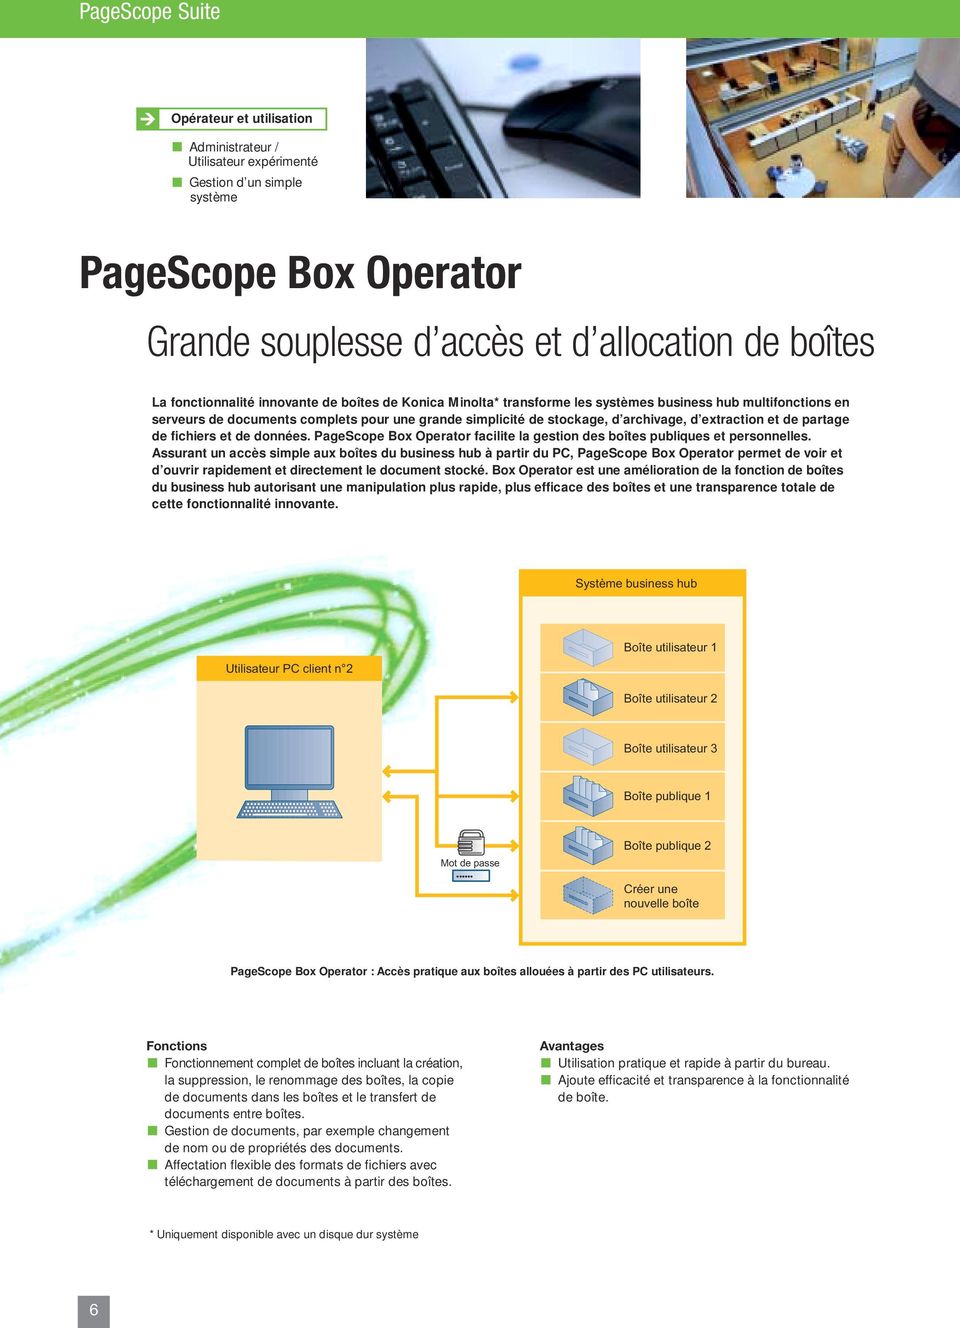 PageScope Box Operator facilite la gestion des boîtes publiques et personnelles.